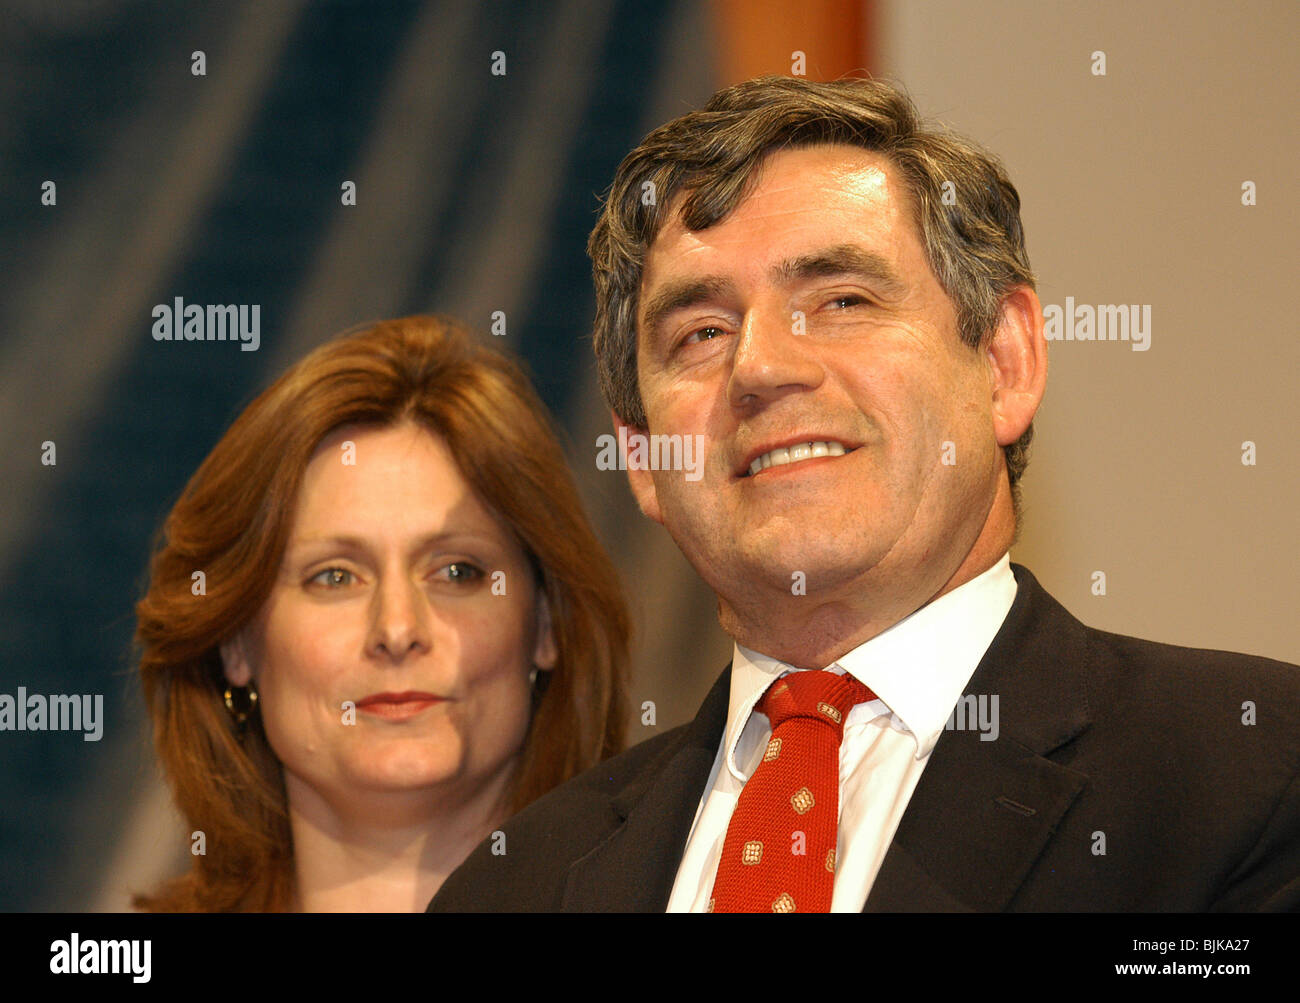 Politica e i politici, il partito laburista, il Primo ministro britannico Gordon Brown con sua moglie Sara. Foto Stock